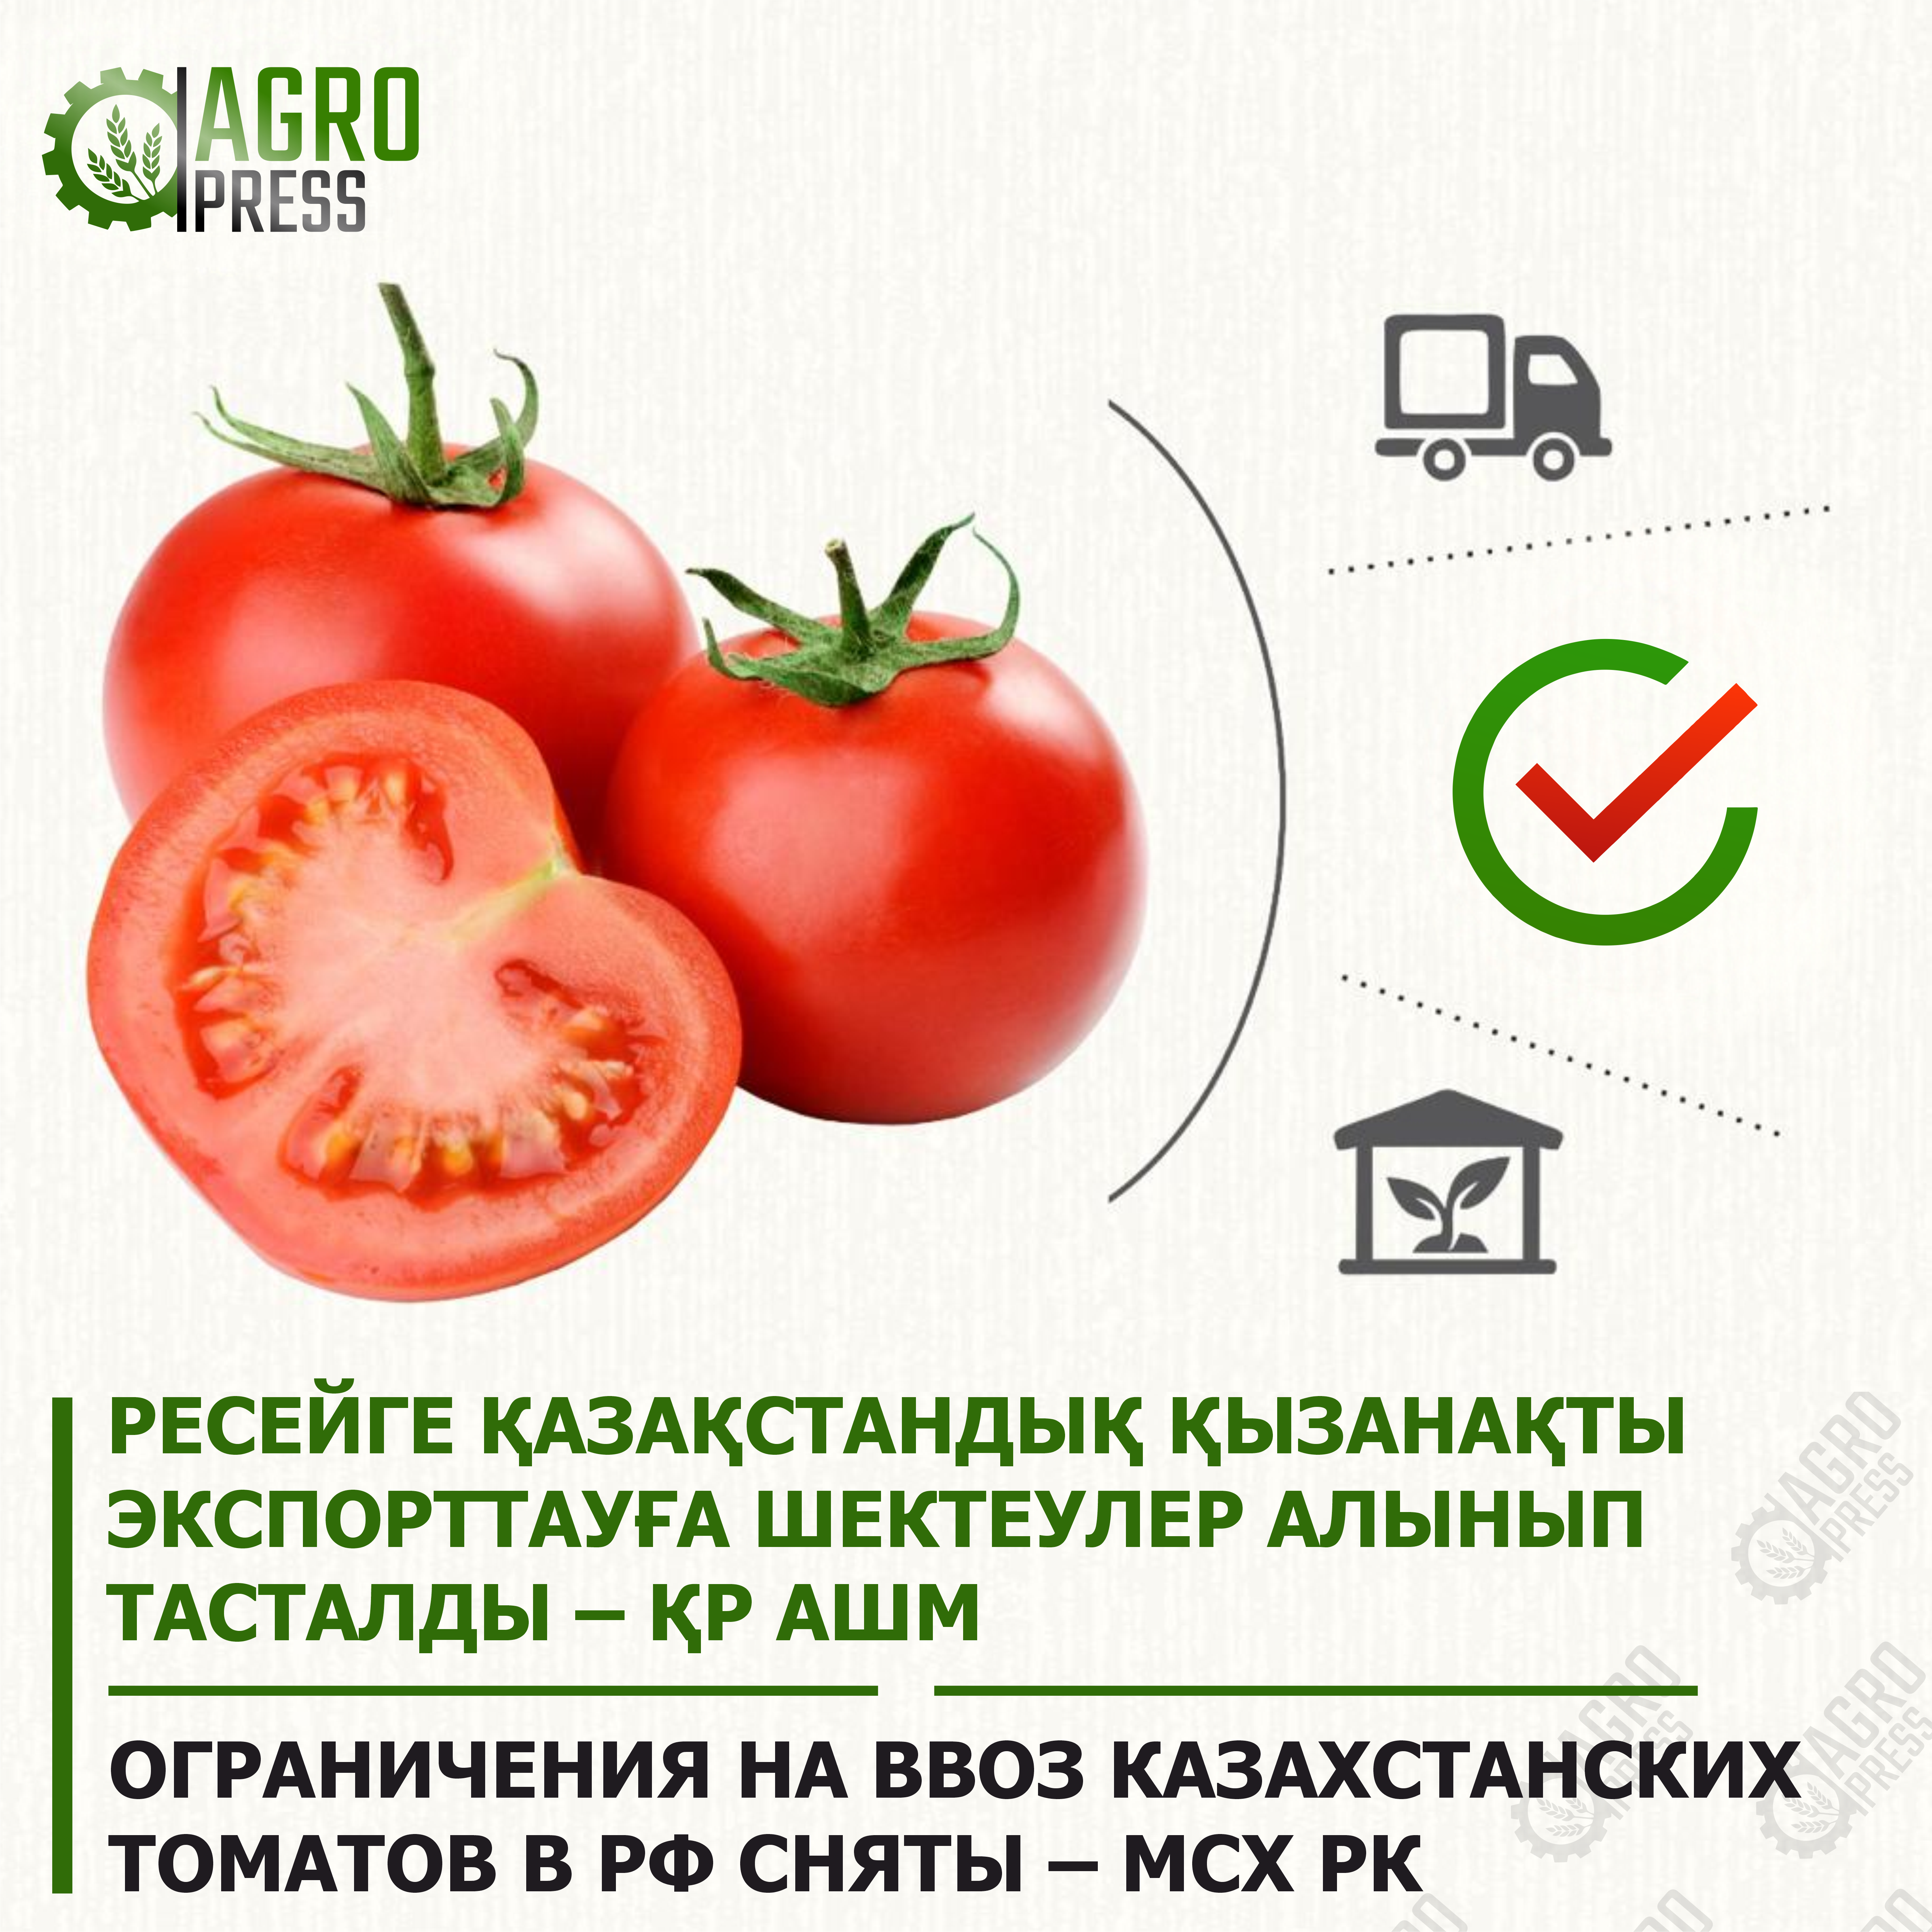 Ограничения на ввоз казахстанских томатов в РФ сняты – МСХ РК